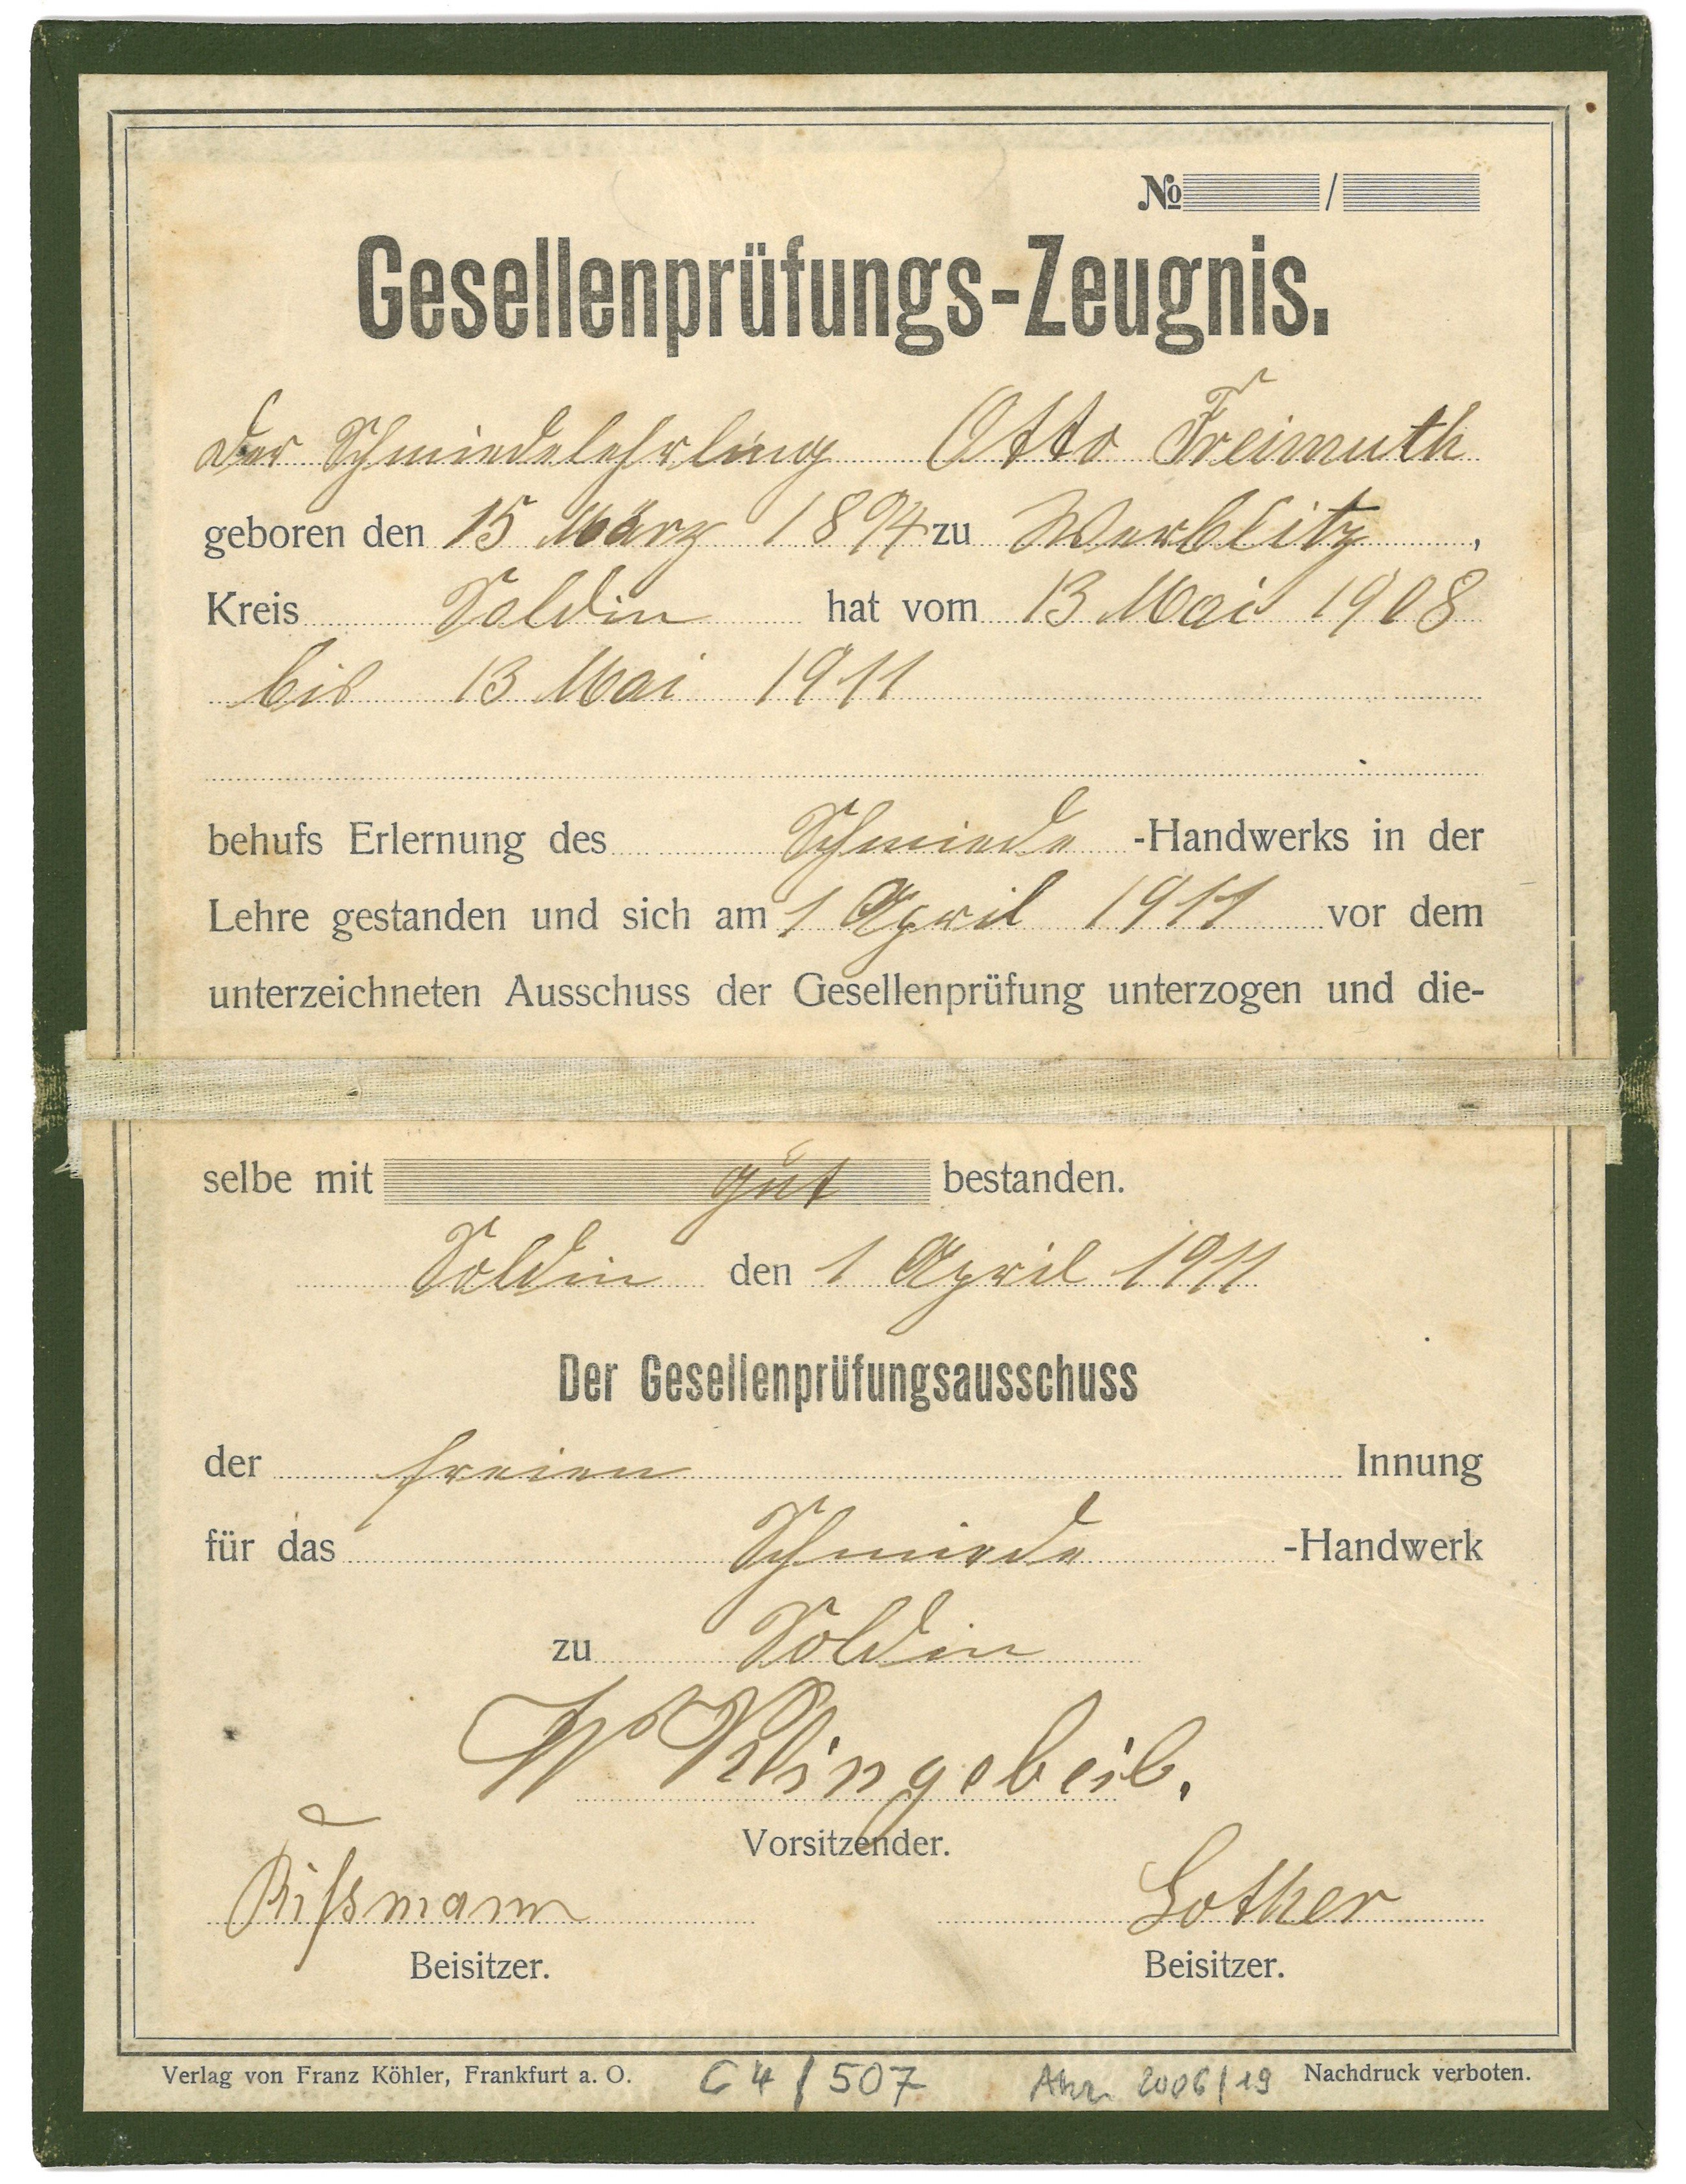 Gesellenprüfungszeugnis für den Schmied Otto Freimuth in Soldin 1911 (Landesgeschichtliche Vereinigung für die Mark Brandenburg e.V., Archiv CC BY)